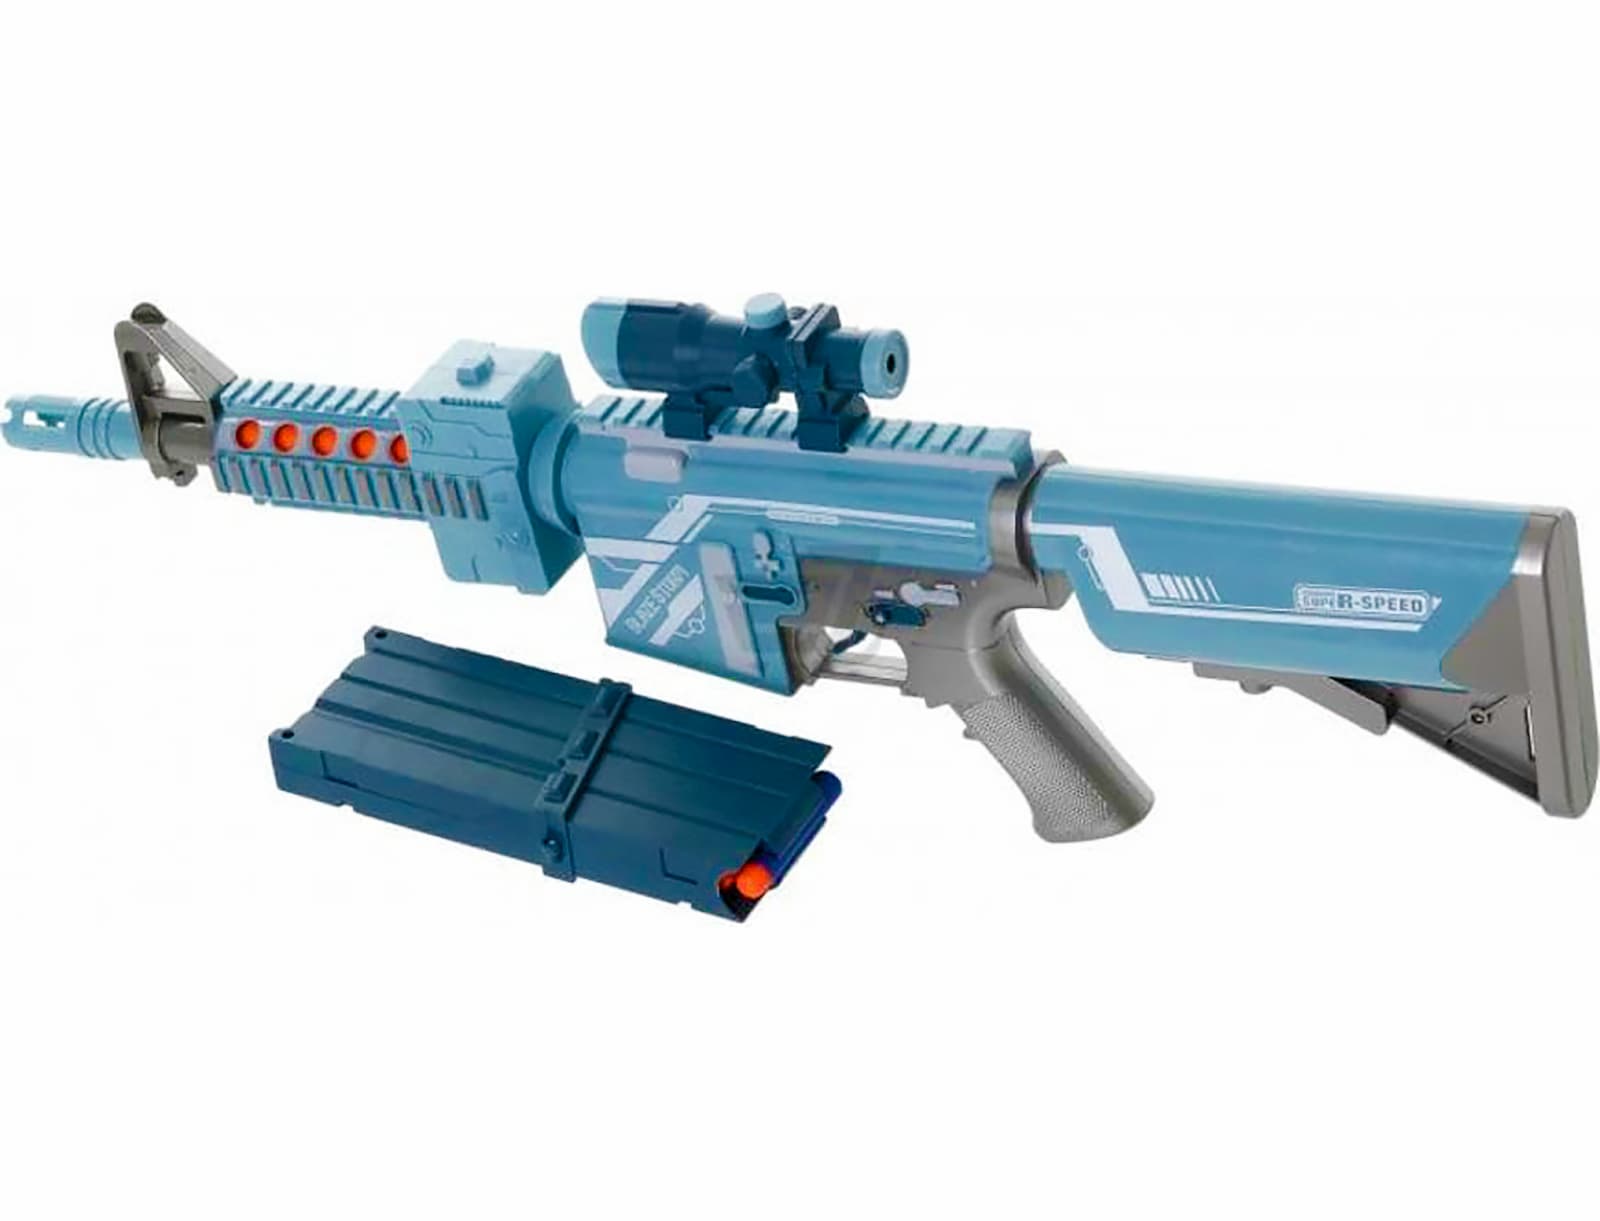 Игрушечный автомат «Blaze Storm: M4 Мститель» 7078, стреляет мягкими пулями, работает от батареек